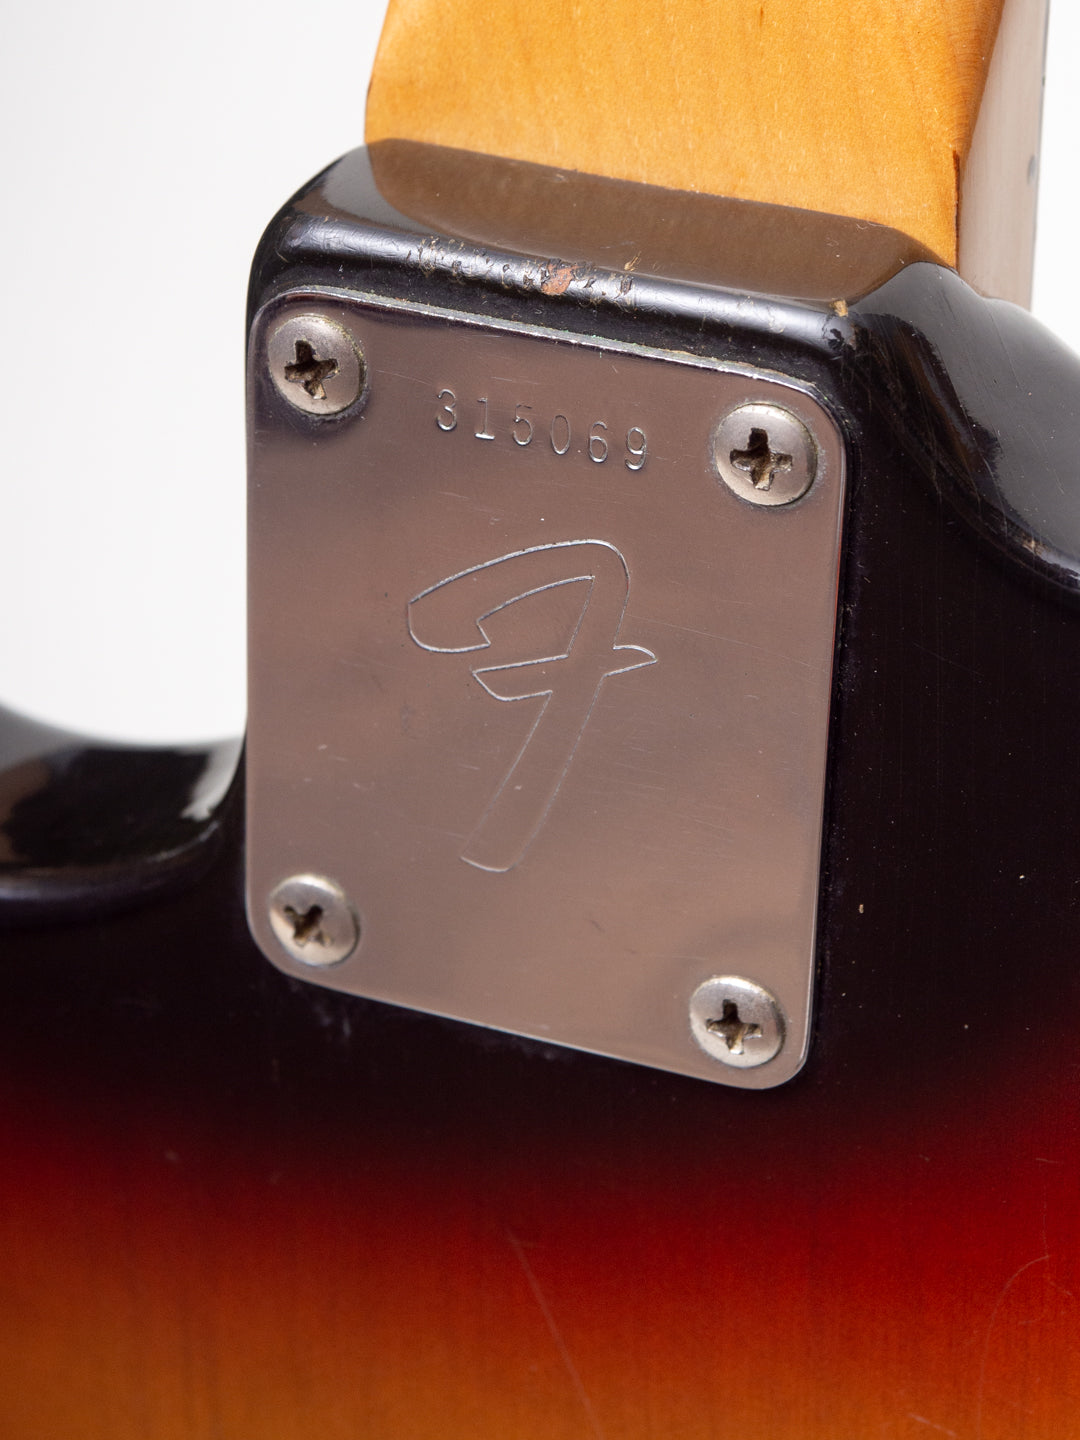 1971 Fender Mustang